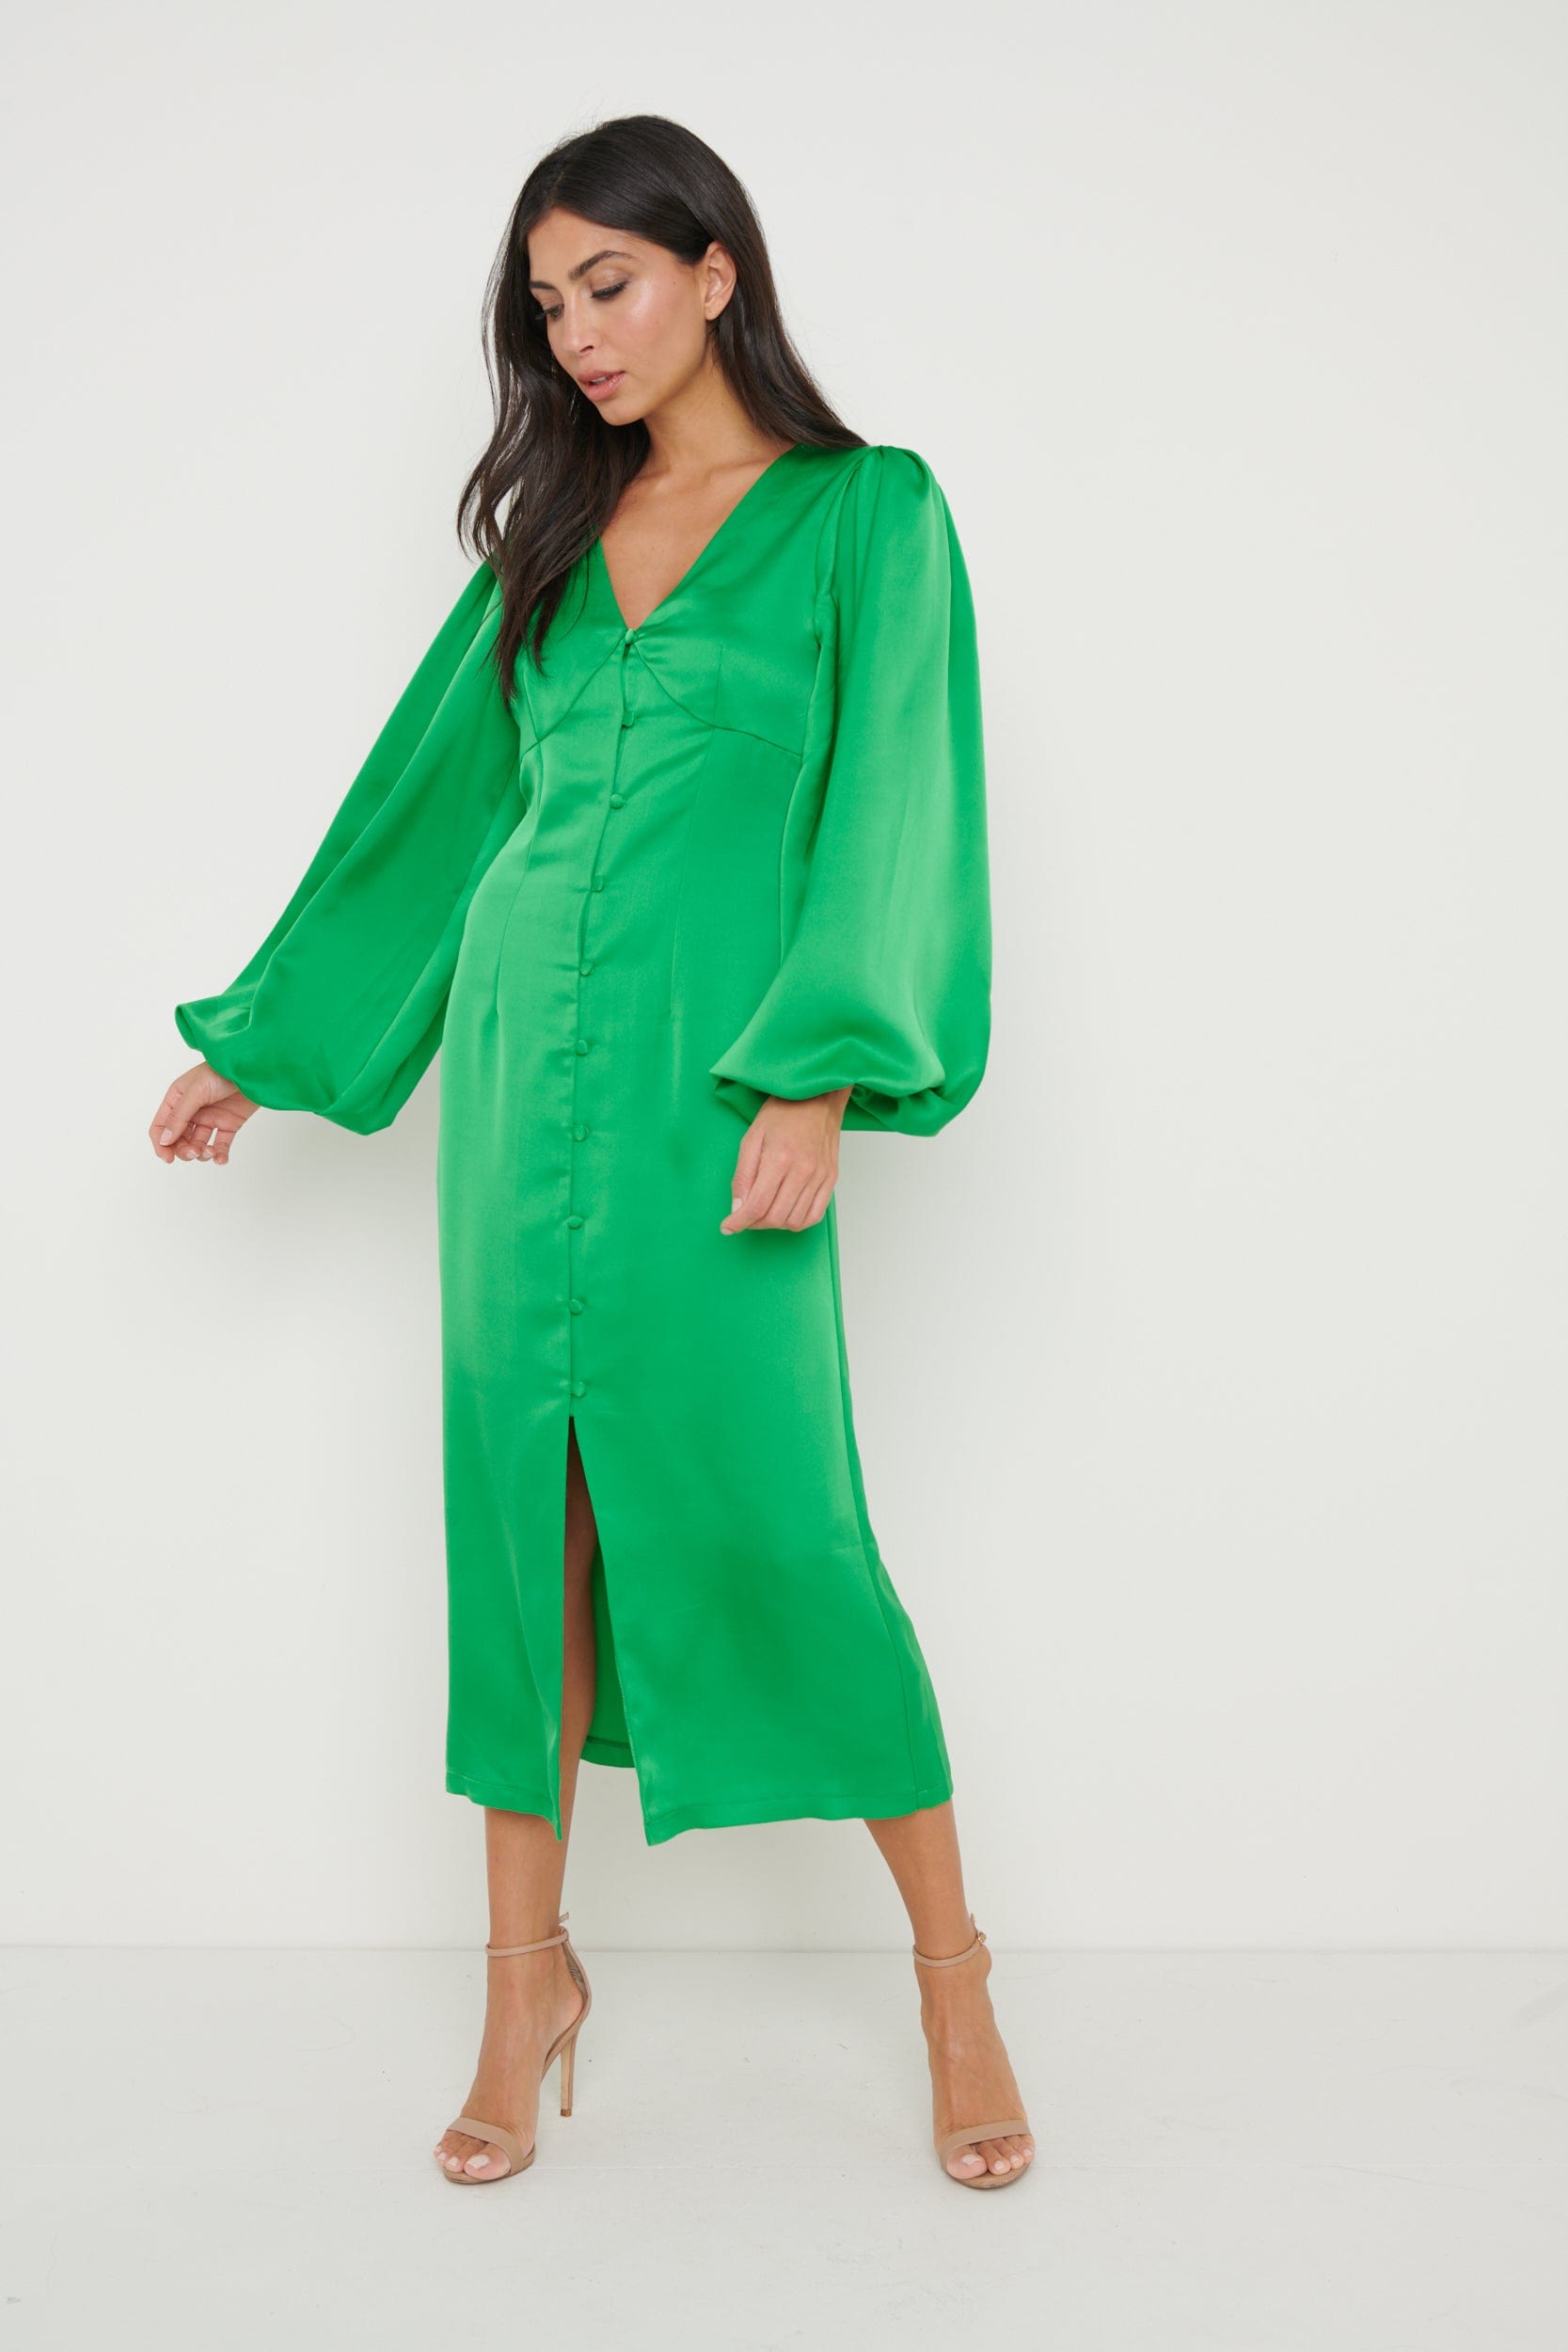 Naya Recycled Midaxi Dress - Emerald Green, 22